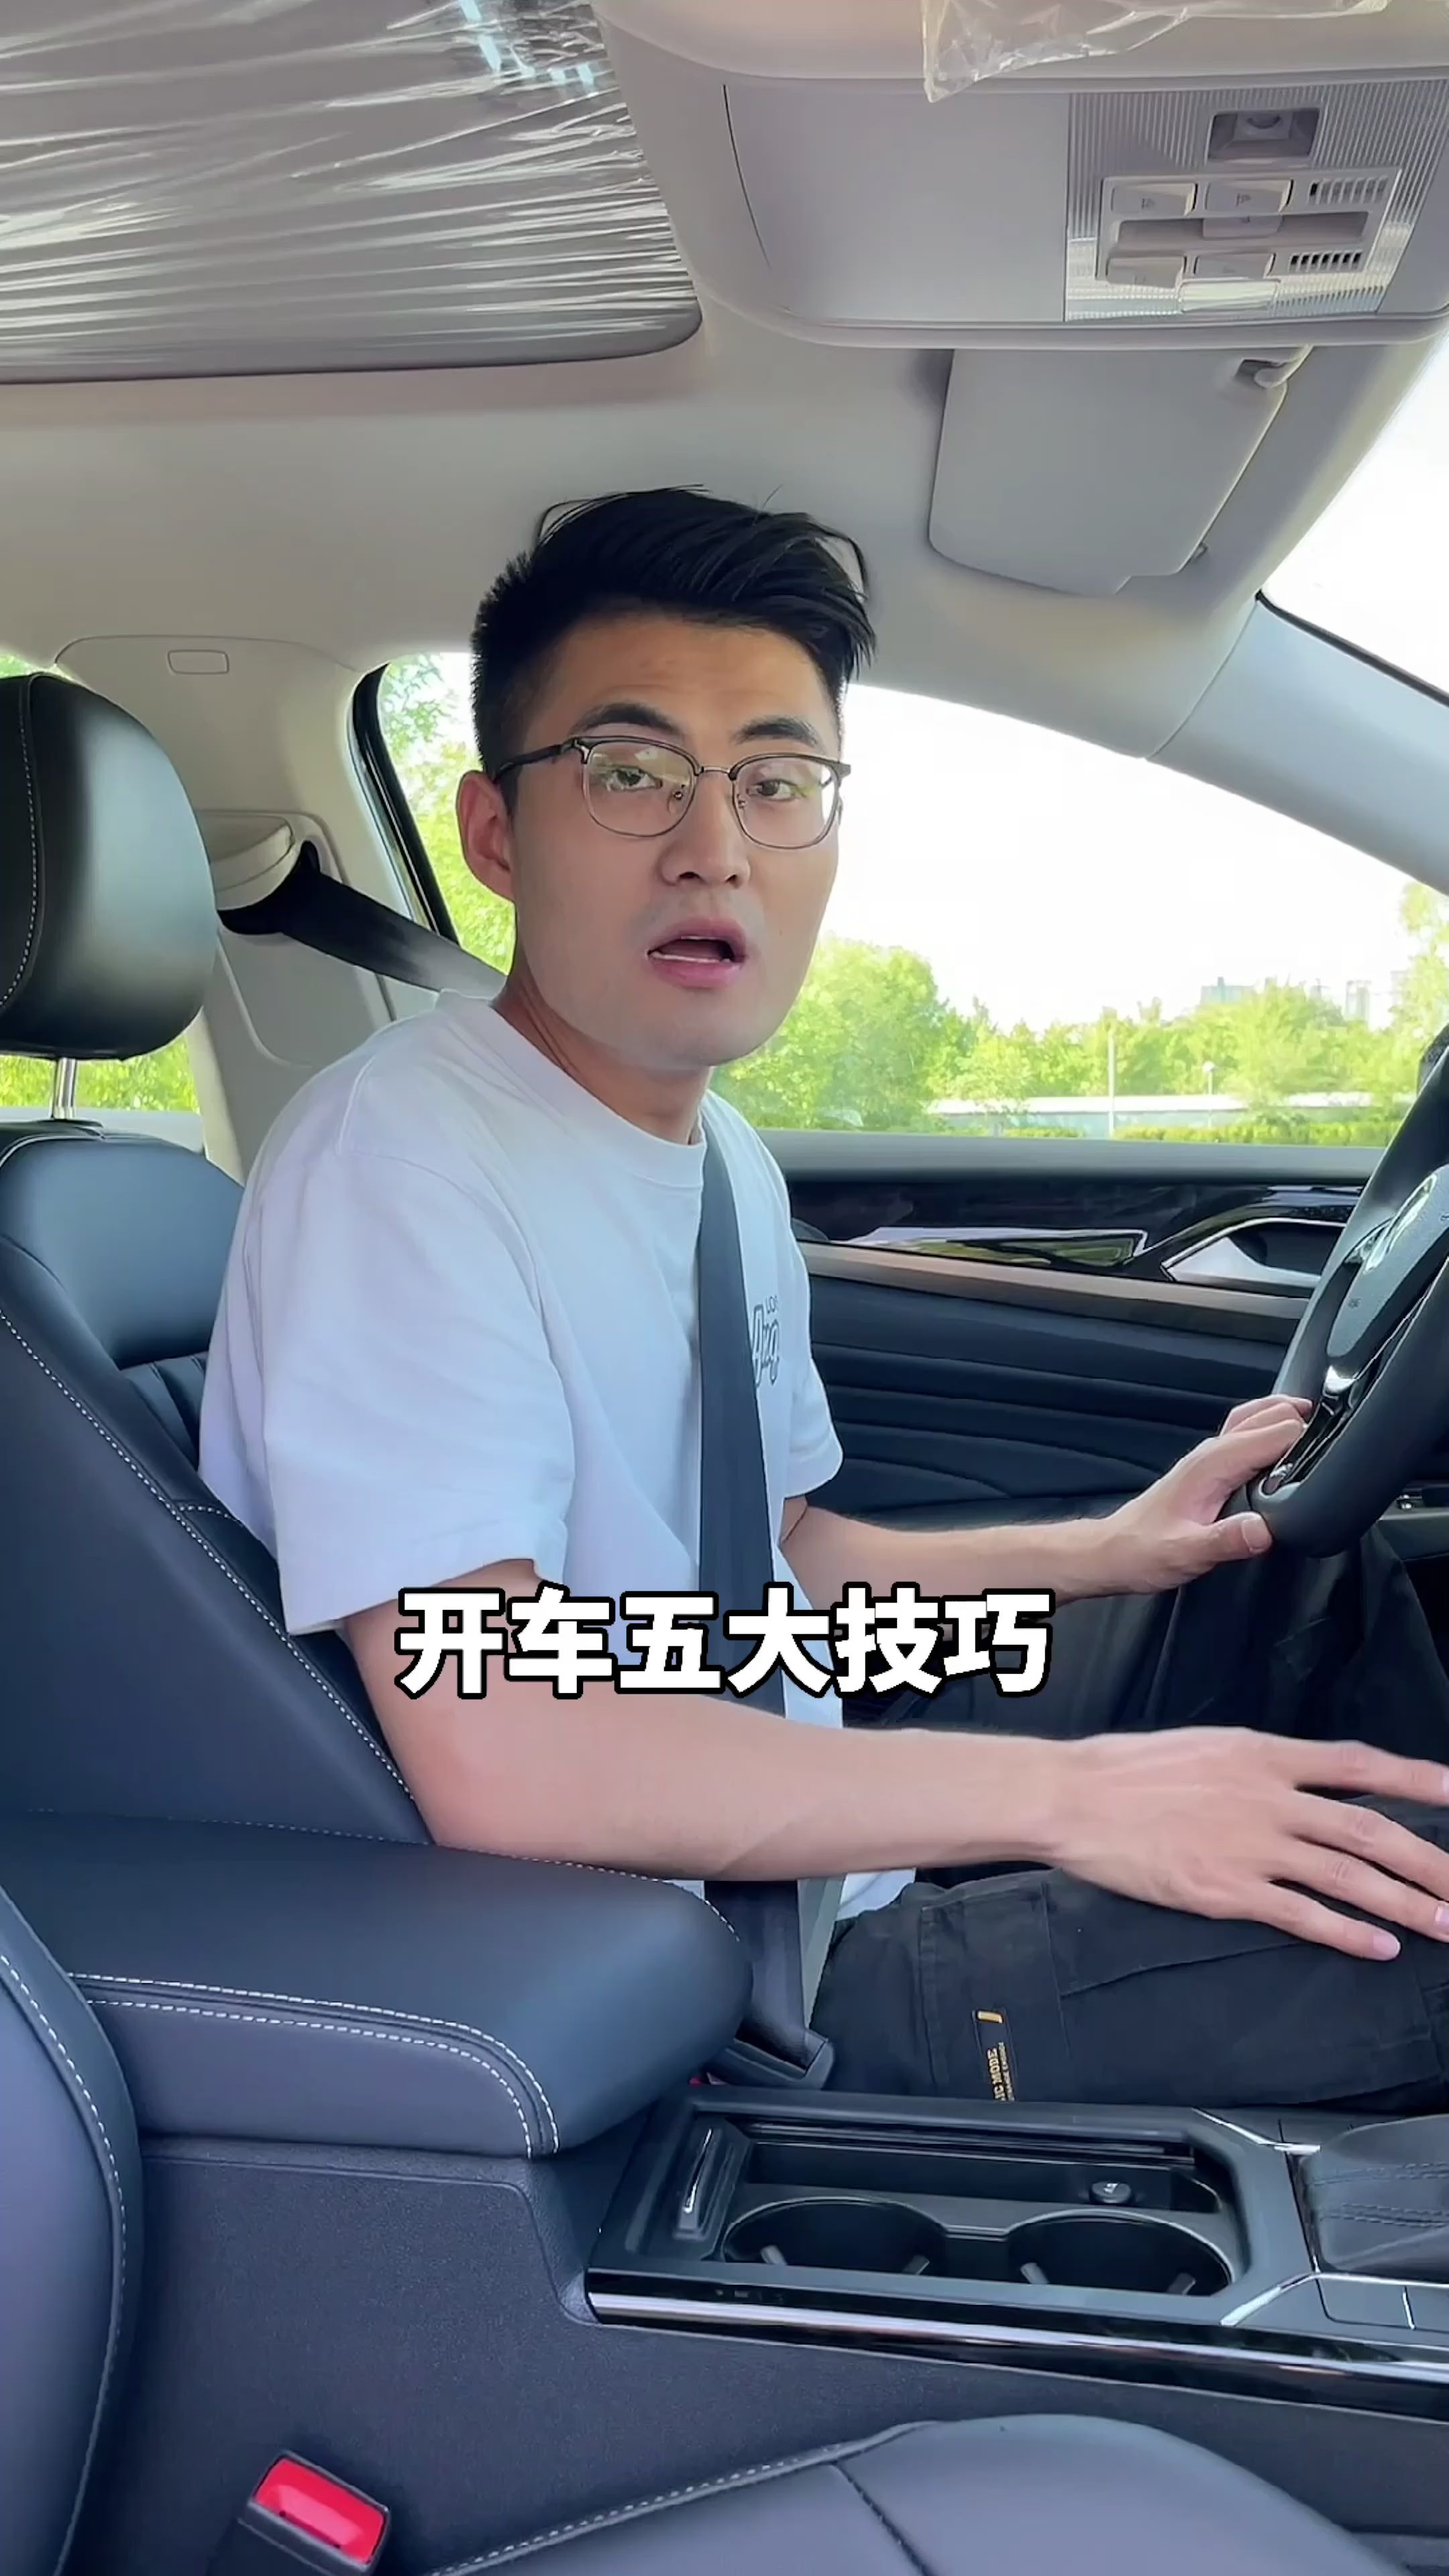 年轻男子开车-蓝牛仔影像-中国原创广告影像素材